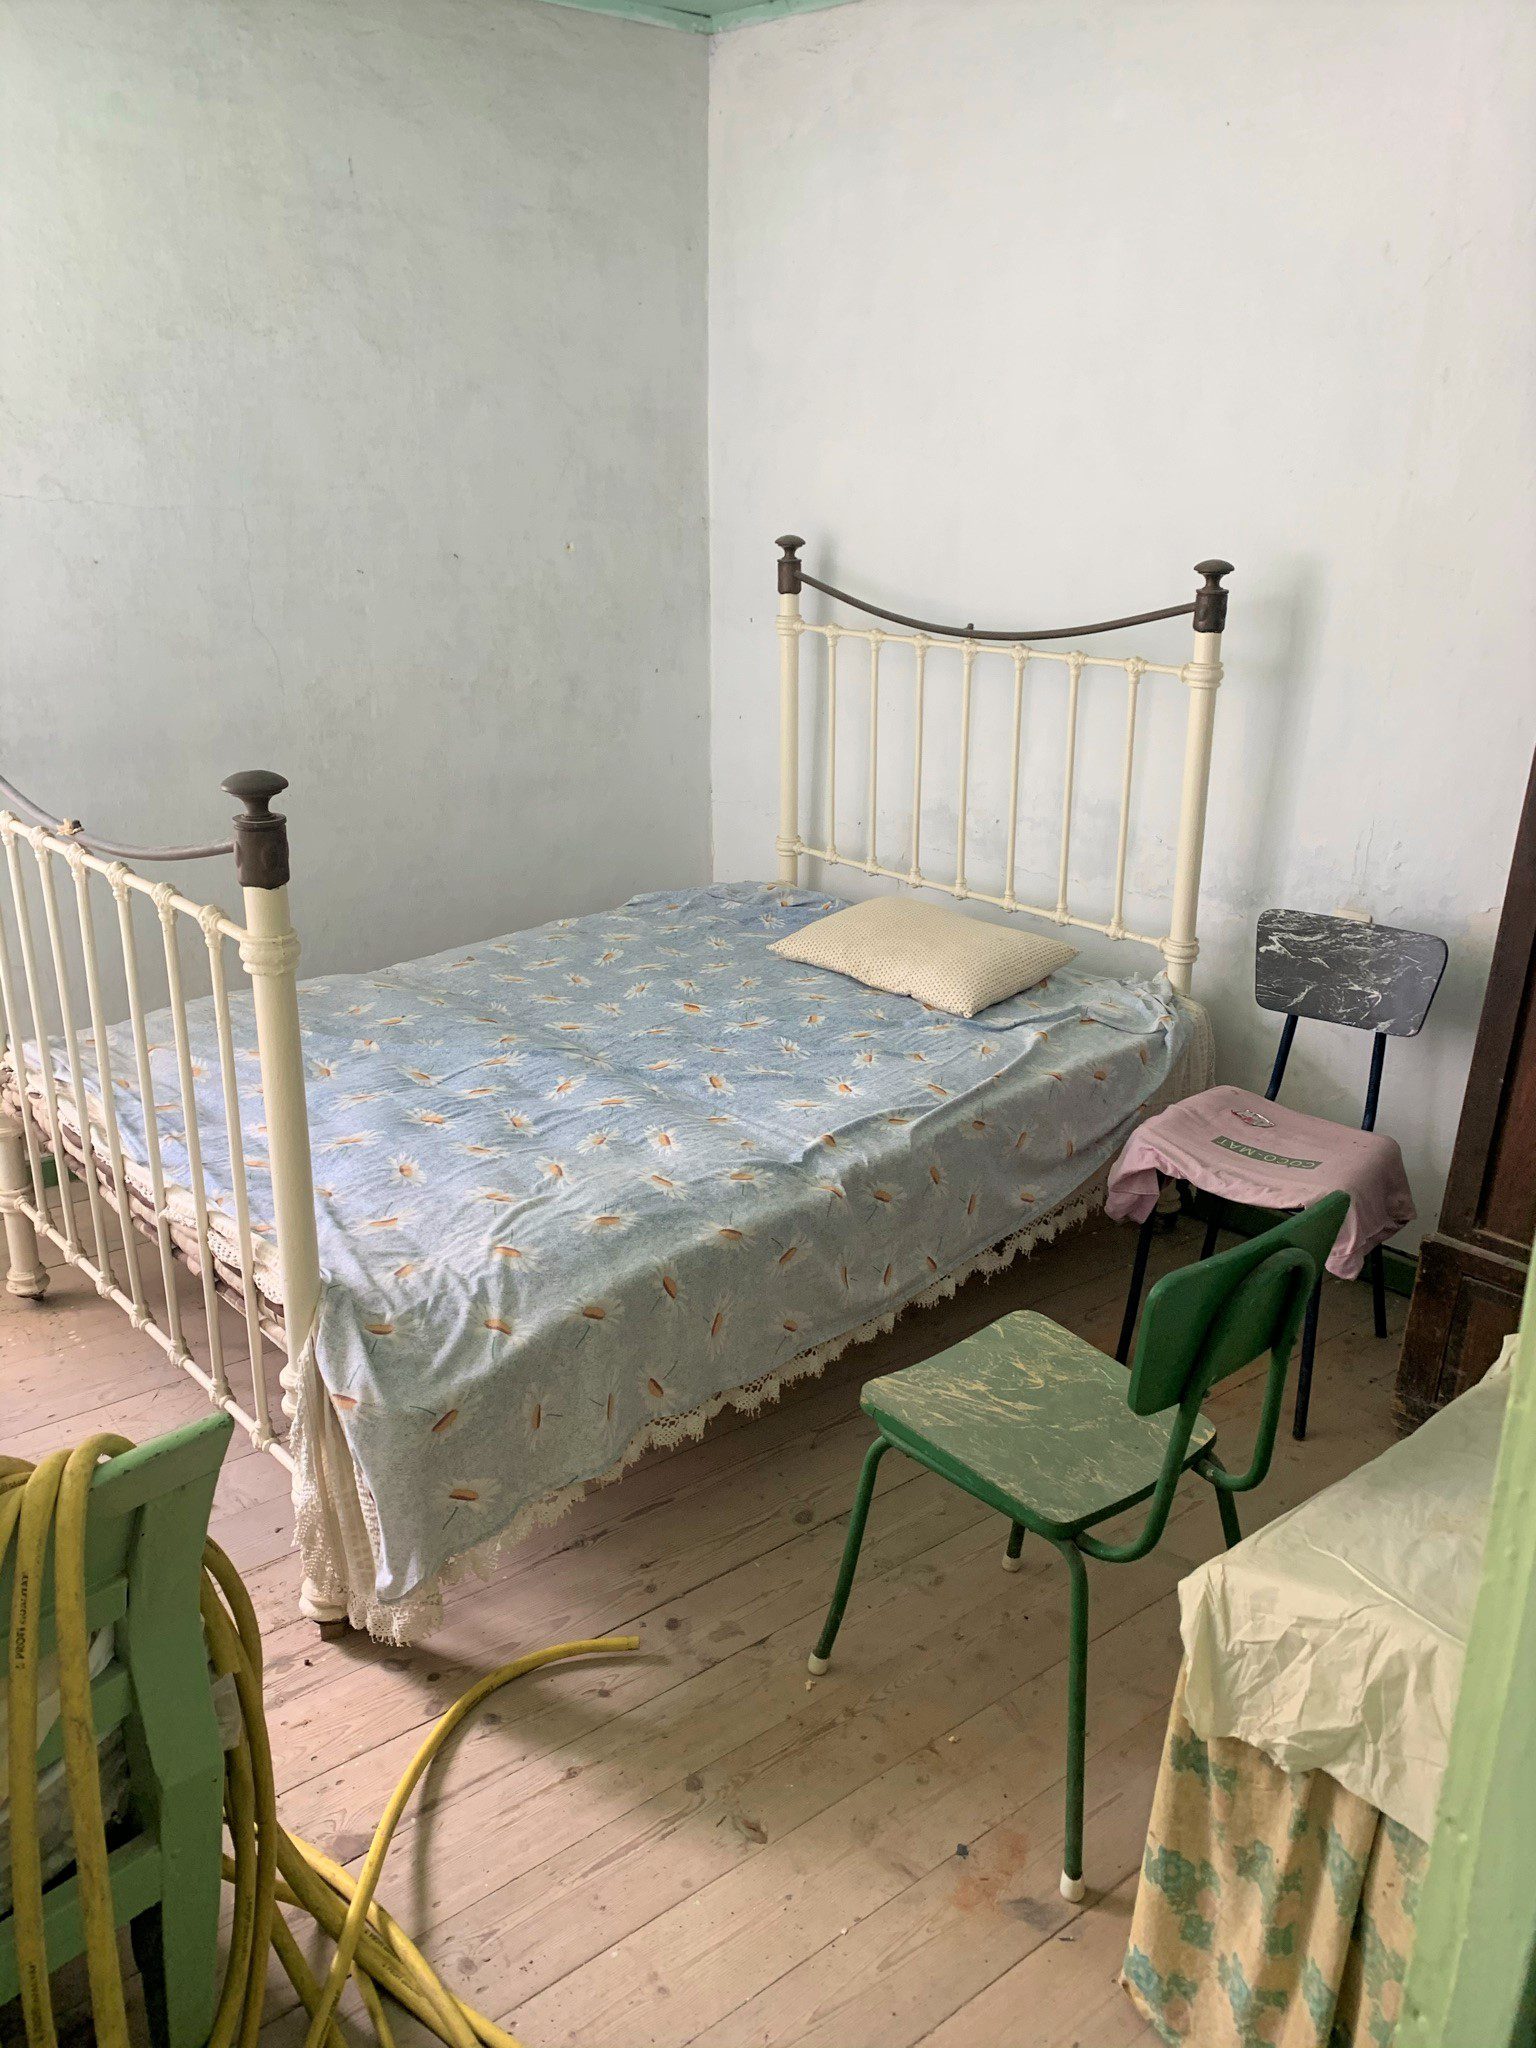 Υπνοδωμάτιο της κατοικίας προς πώληση Ιθακώκα Ελλάδα, Φρίκες